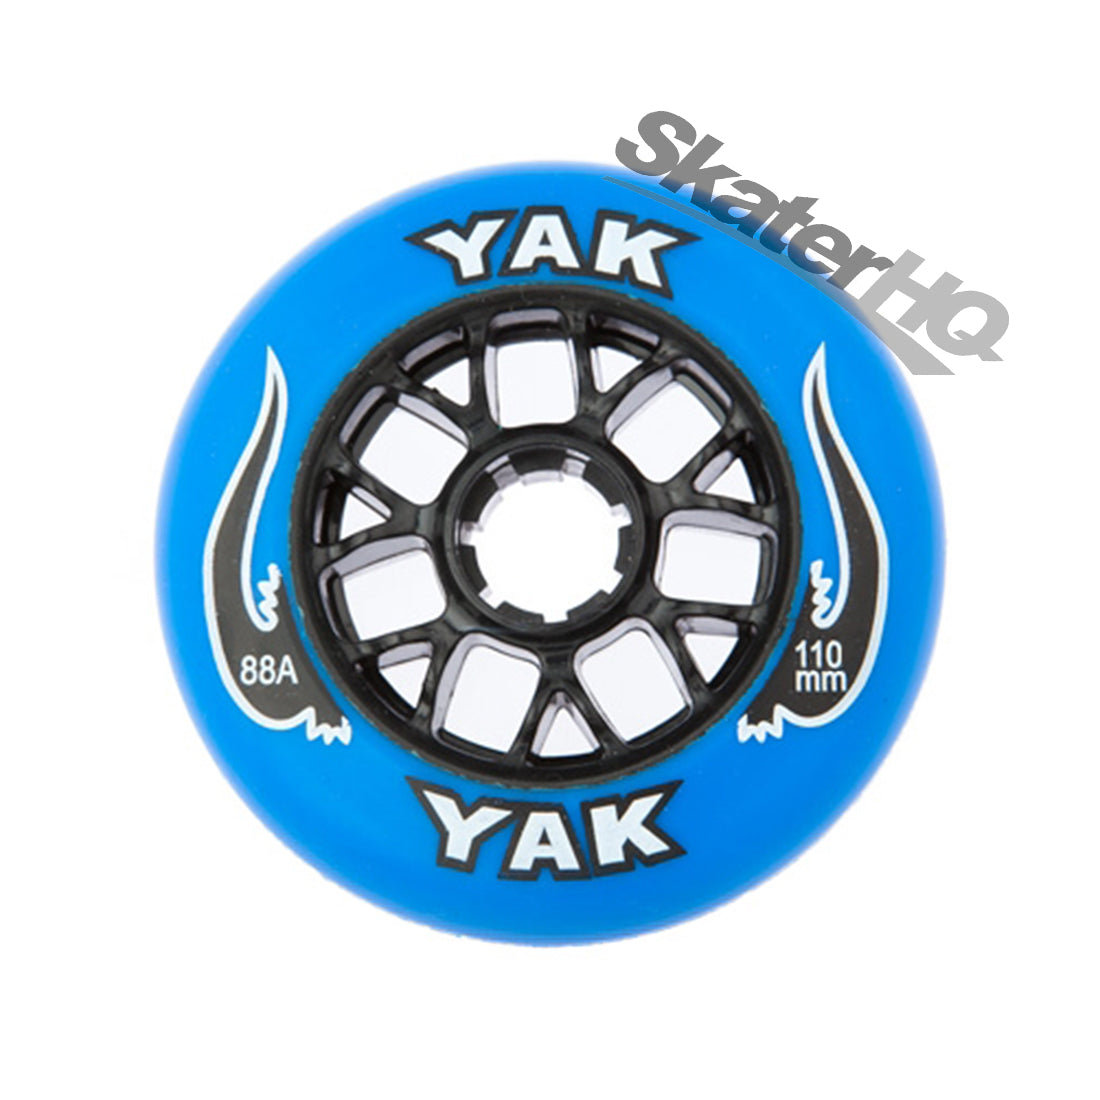 Yak Pro 110mm/88a Wheel - Blue/Black Scooter Wheels